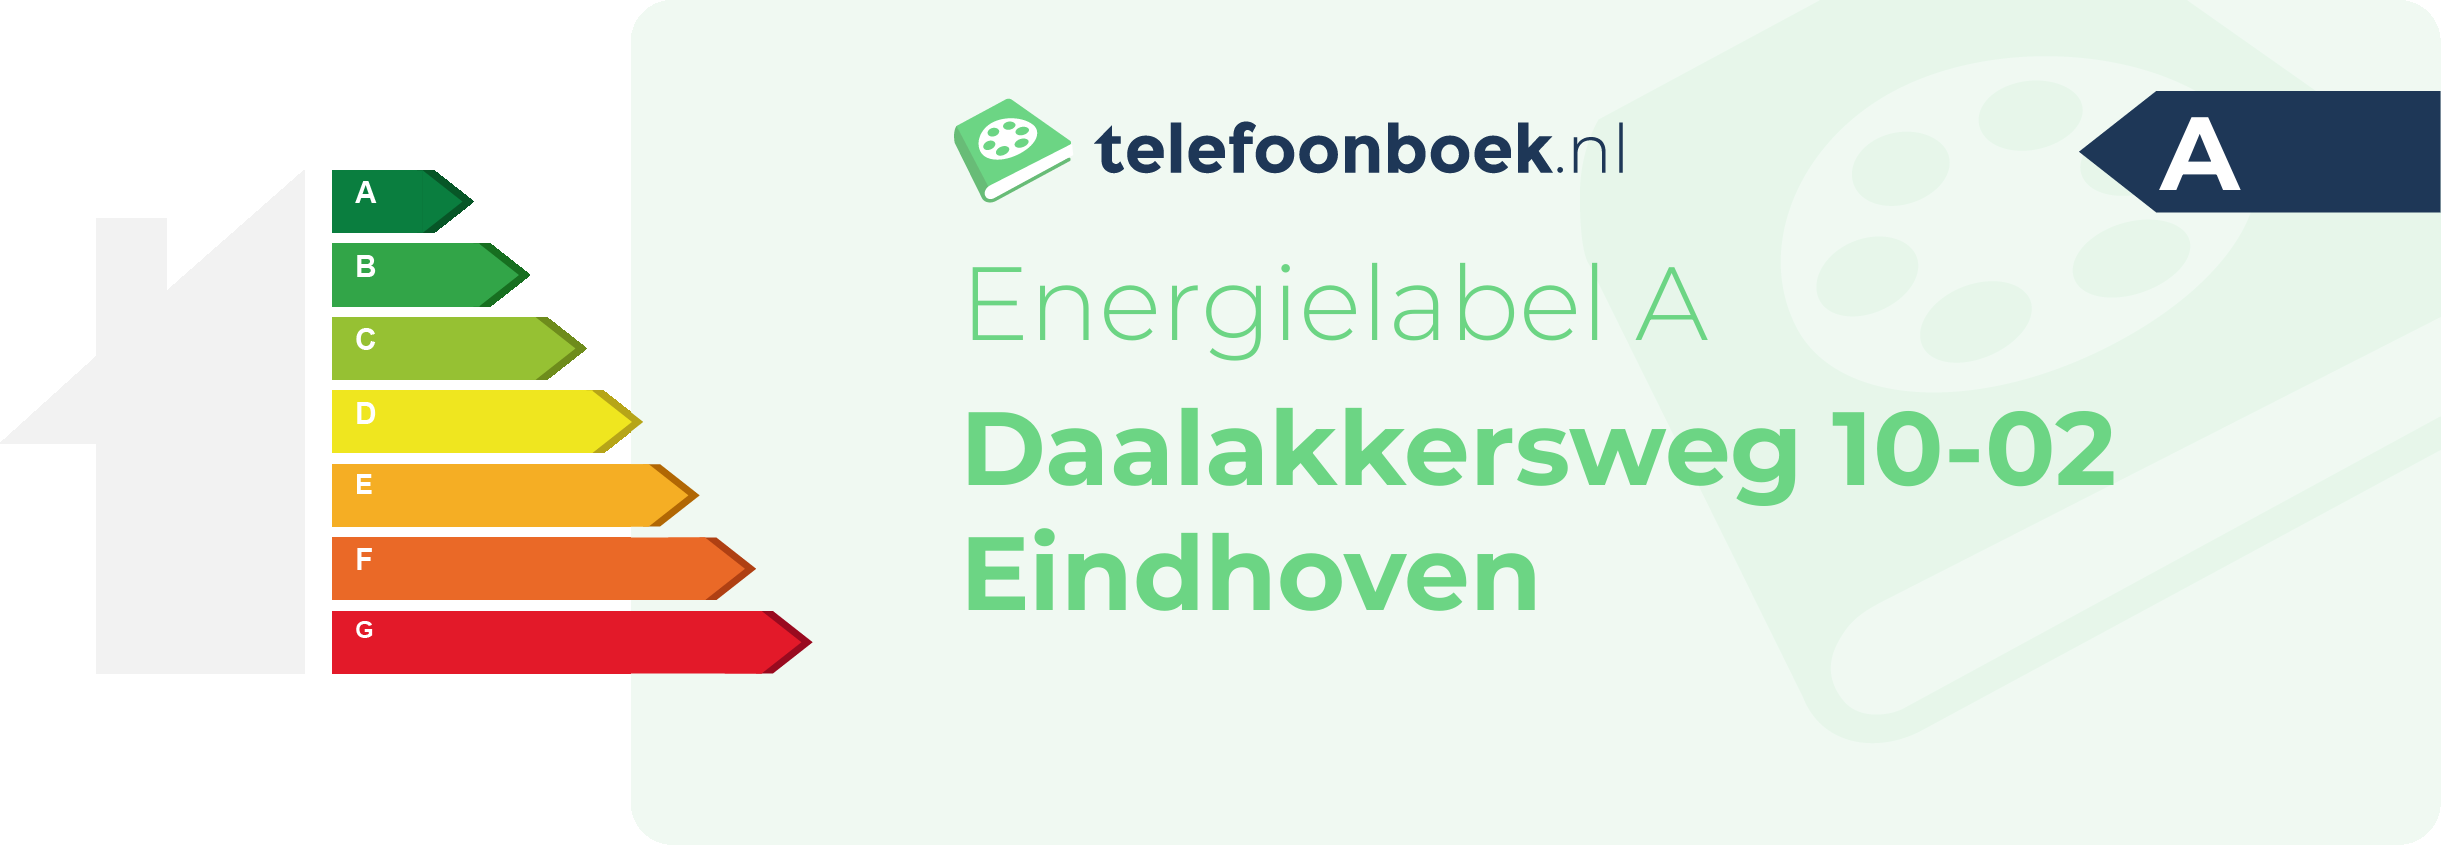 Energielabel Daalakkersweg 10-02 Eindhoven